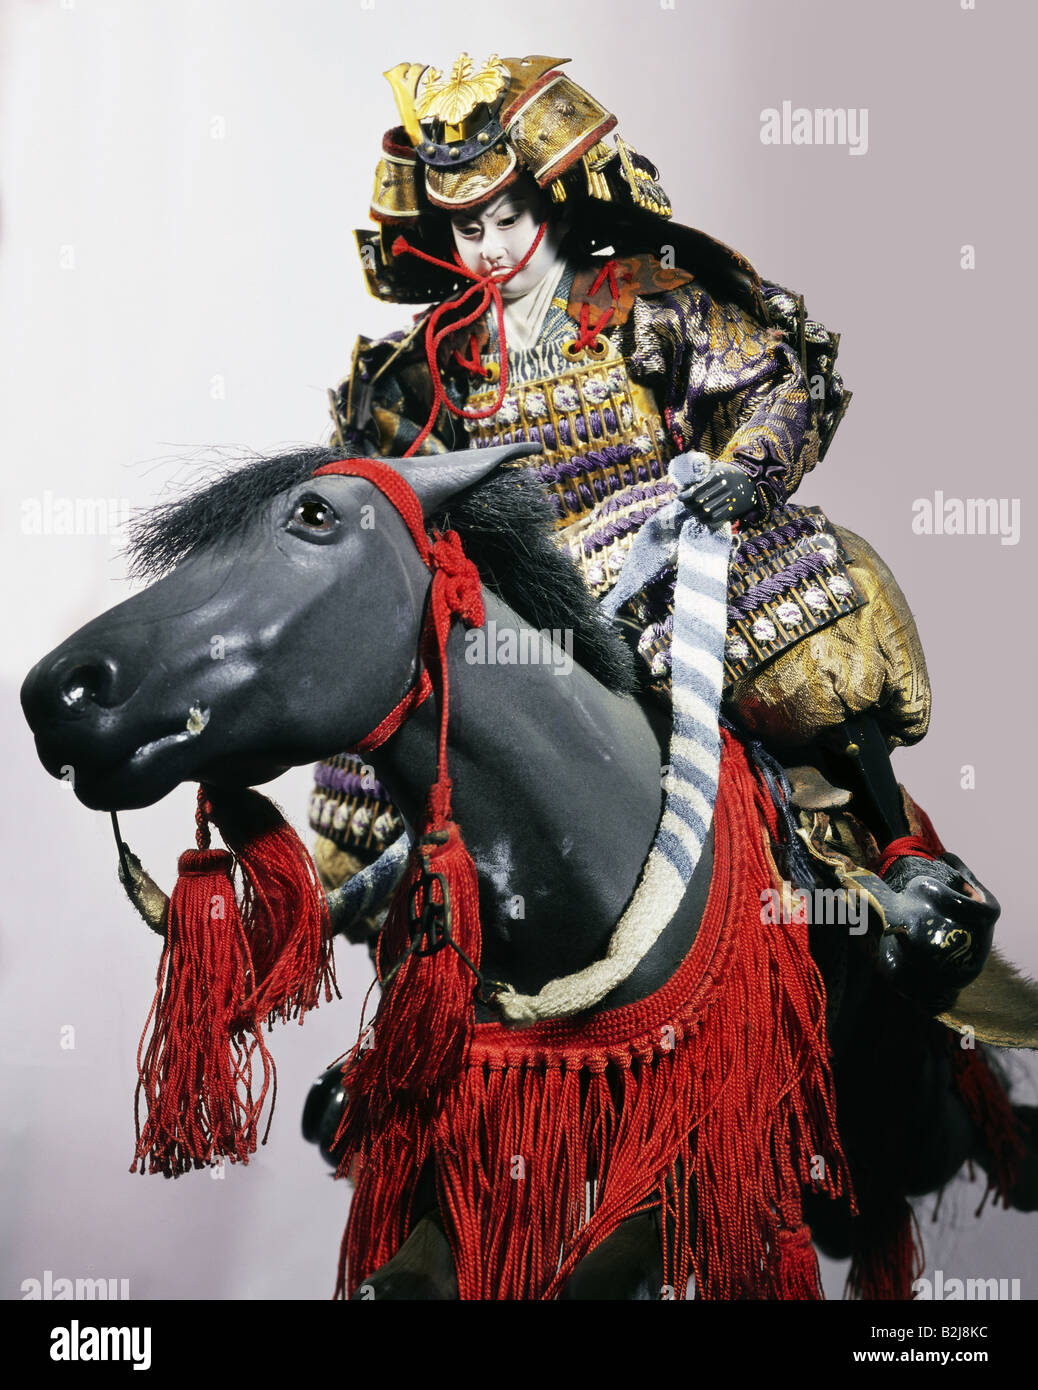 Jouets, poupées, samouraï sur cheval, bois peint avec soie et brocart, poupée pour la festivité Tango no sekku, Japon, vers 1890, Banque D'Images